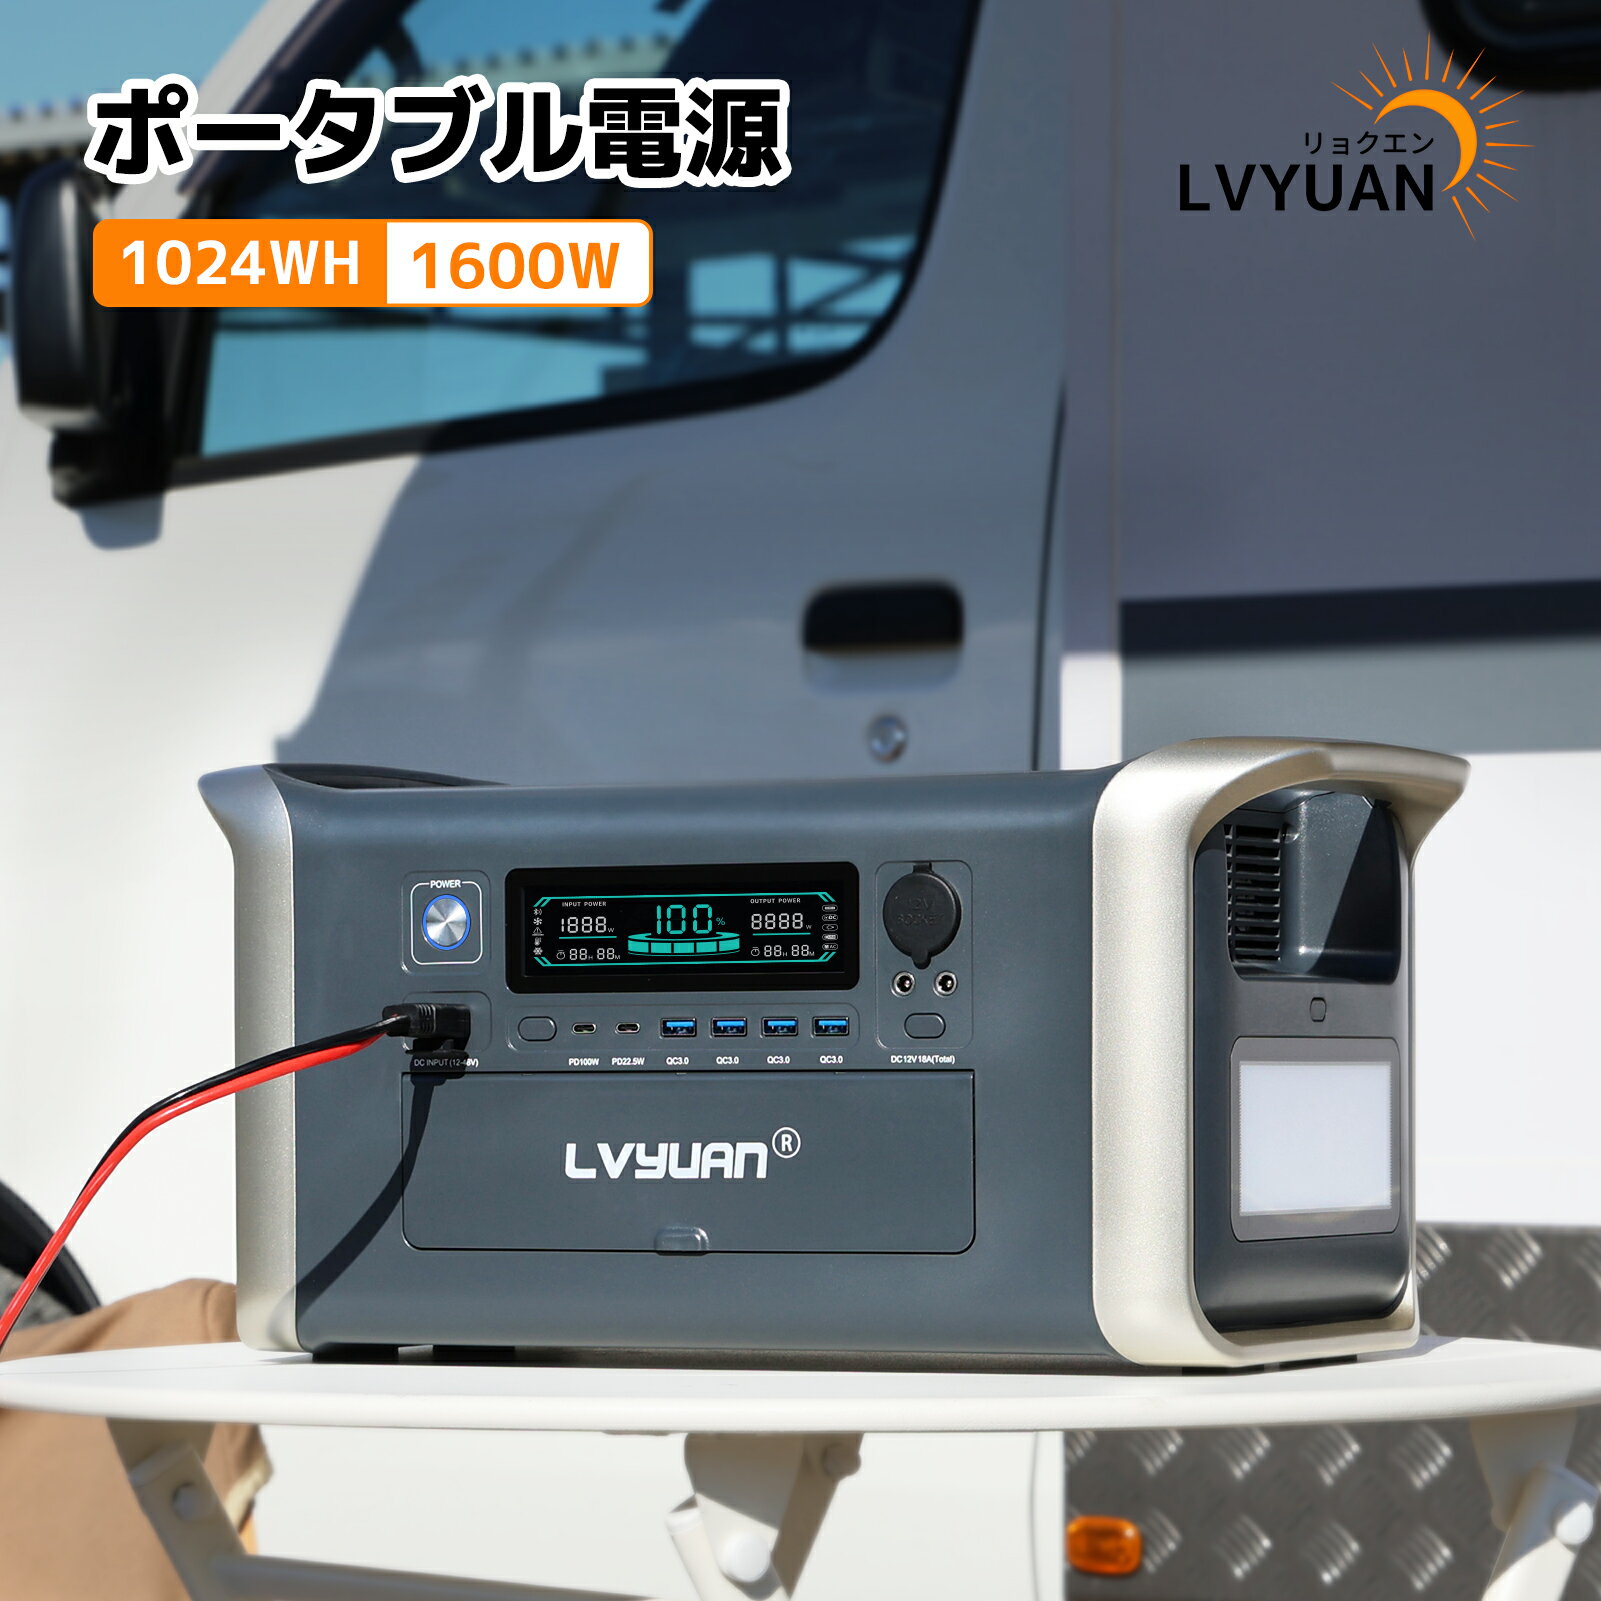 LVYUAN(リョクエン) ポータブル電源 大容量 1024